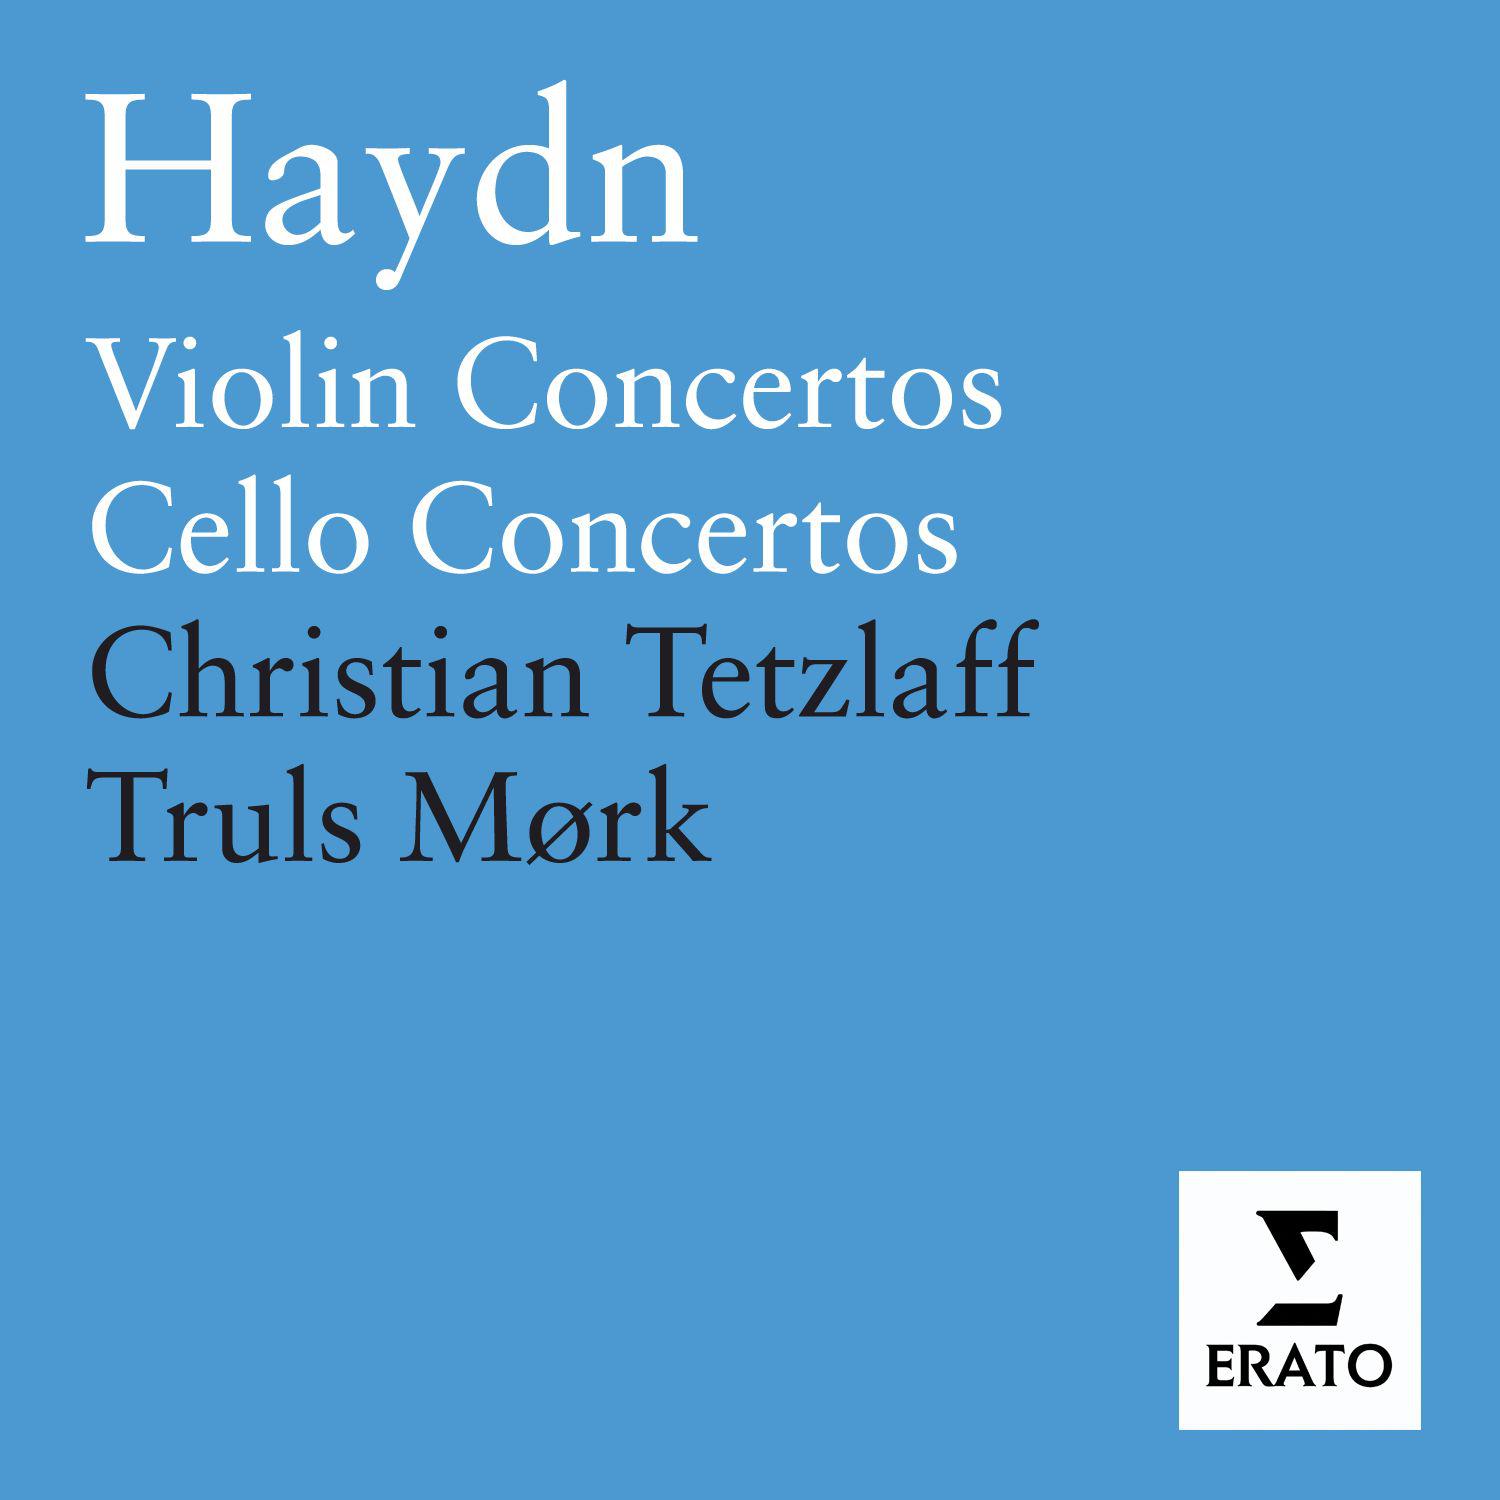 Cello Concerto No. 1 in C Major, Hob. VIIb/1: III. Finale - Allegro molto